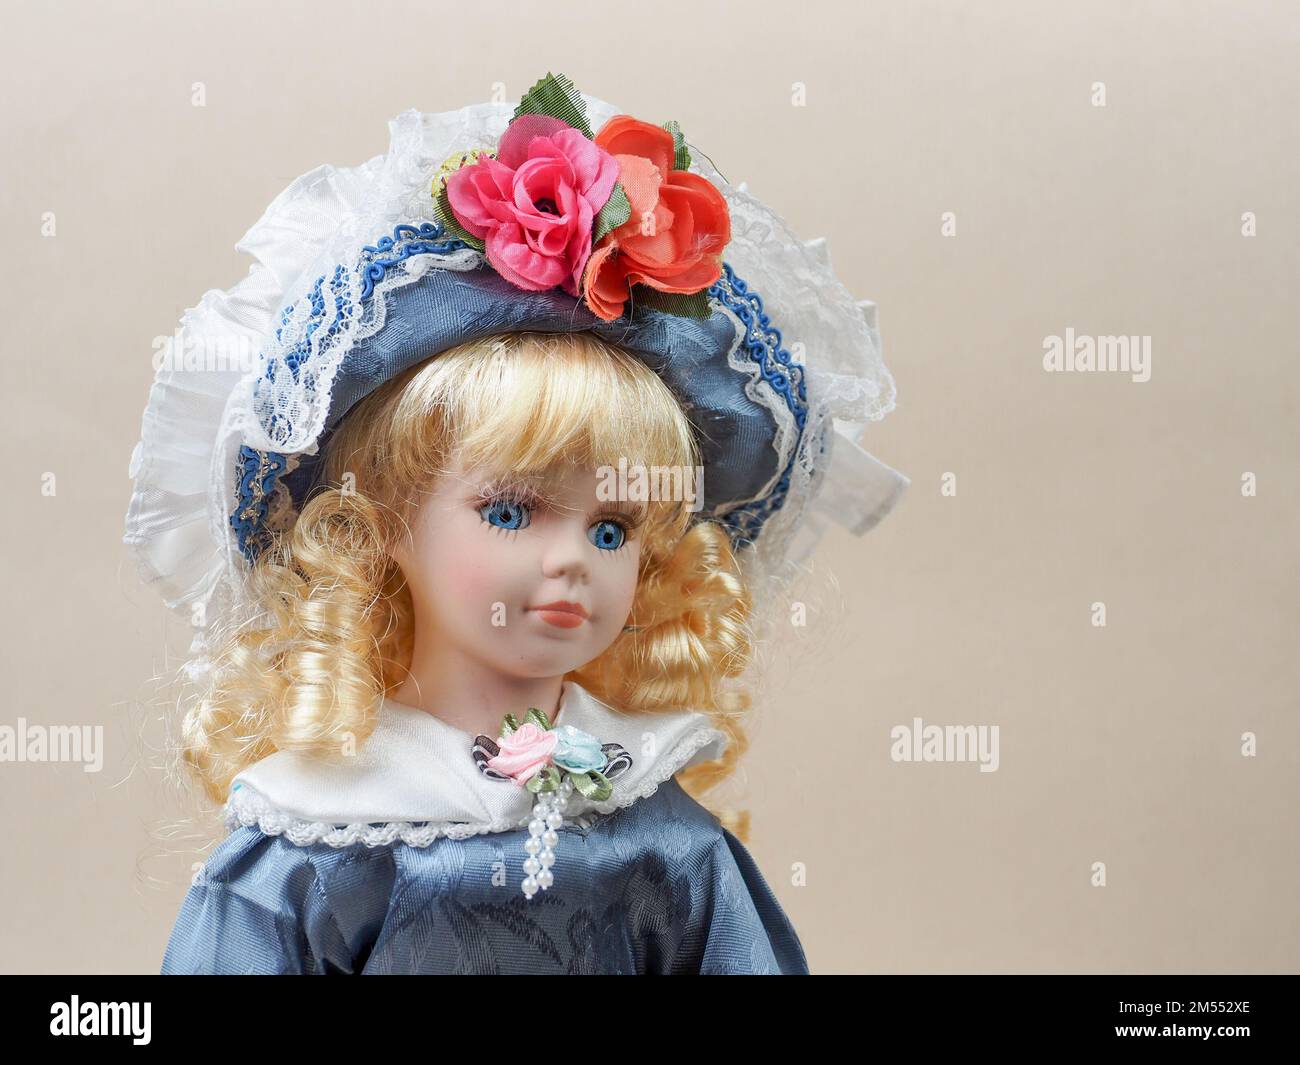 Poupée en porcelaine vintage bébé fille avec des yeux bleus, boucles  blondes, portant un chapeau bleu décoré de fleurs rouges et une robe bleue  en satin. Les poupées en porcelaine étaient populaires